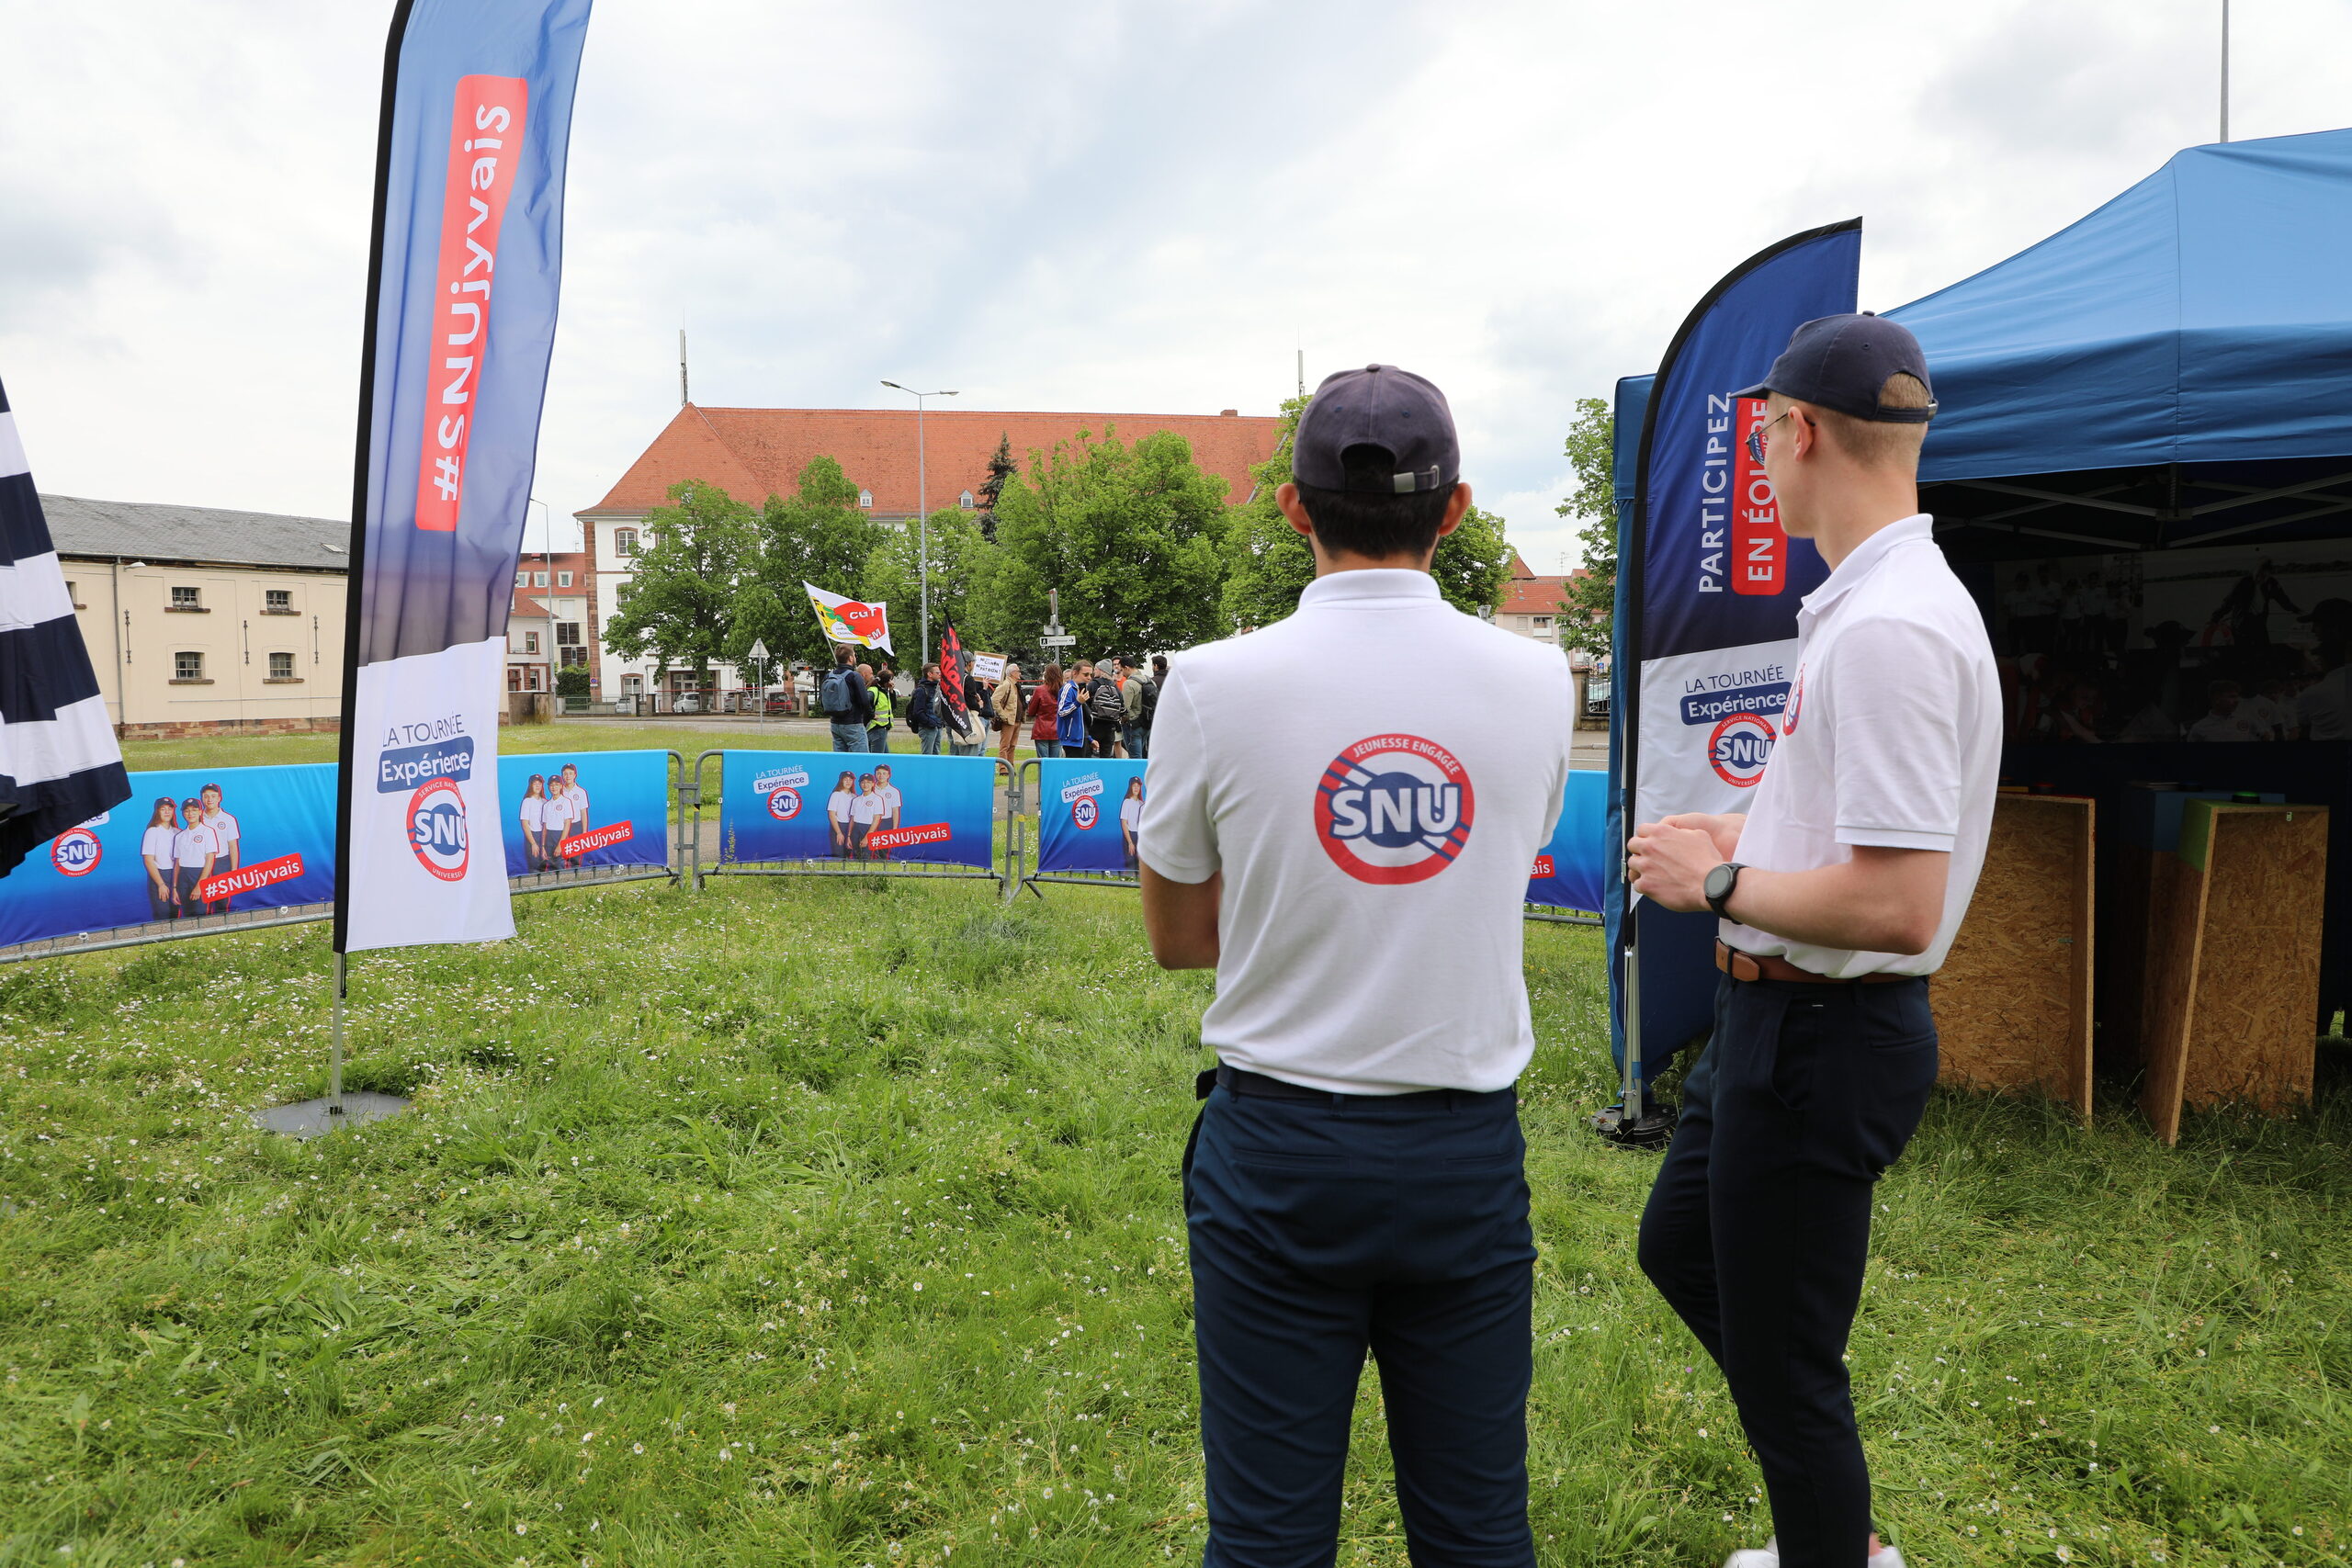 Sous la pression des opposants, le village SNU déplacé à Haguenau : « Personne n’a besoin du SNU pour s’engager »